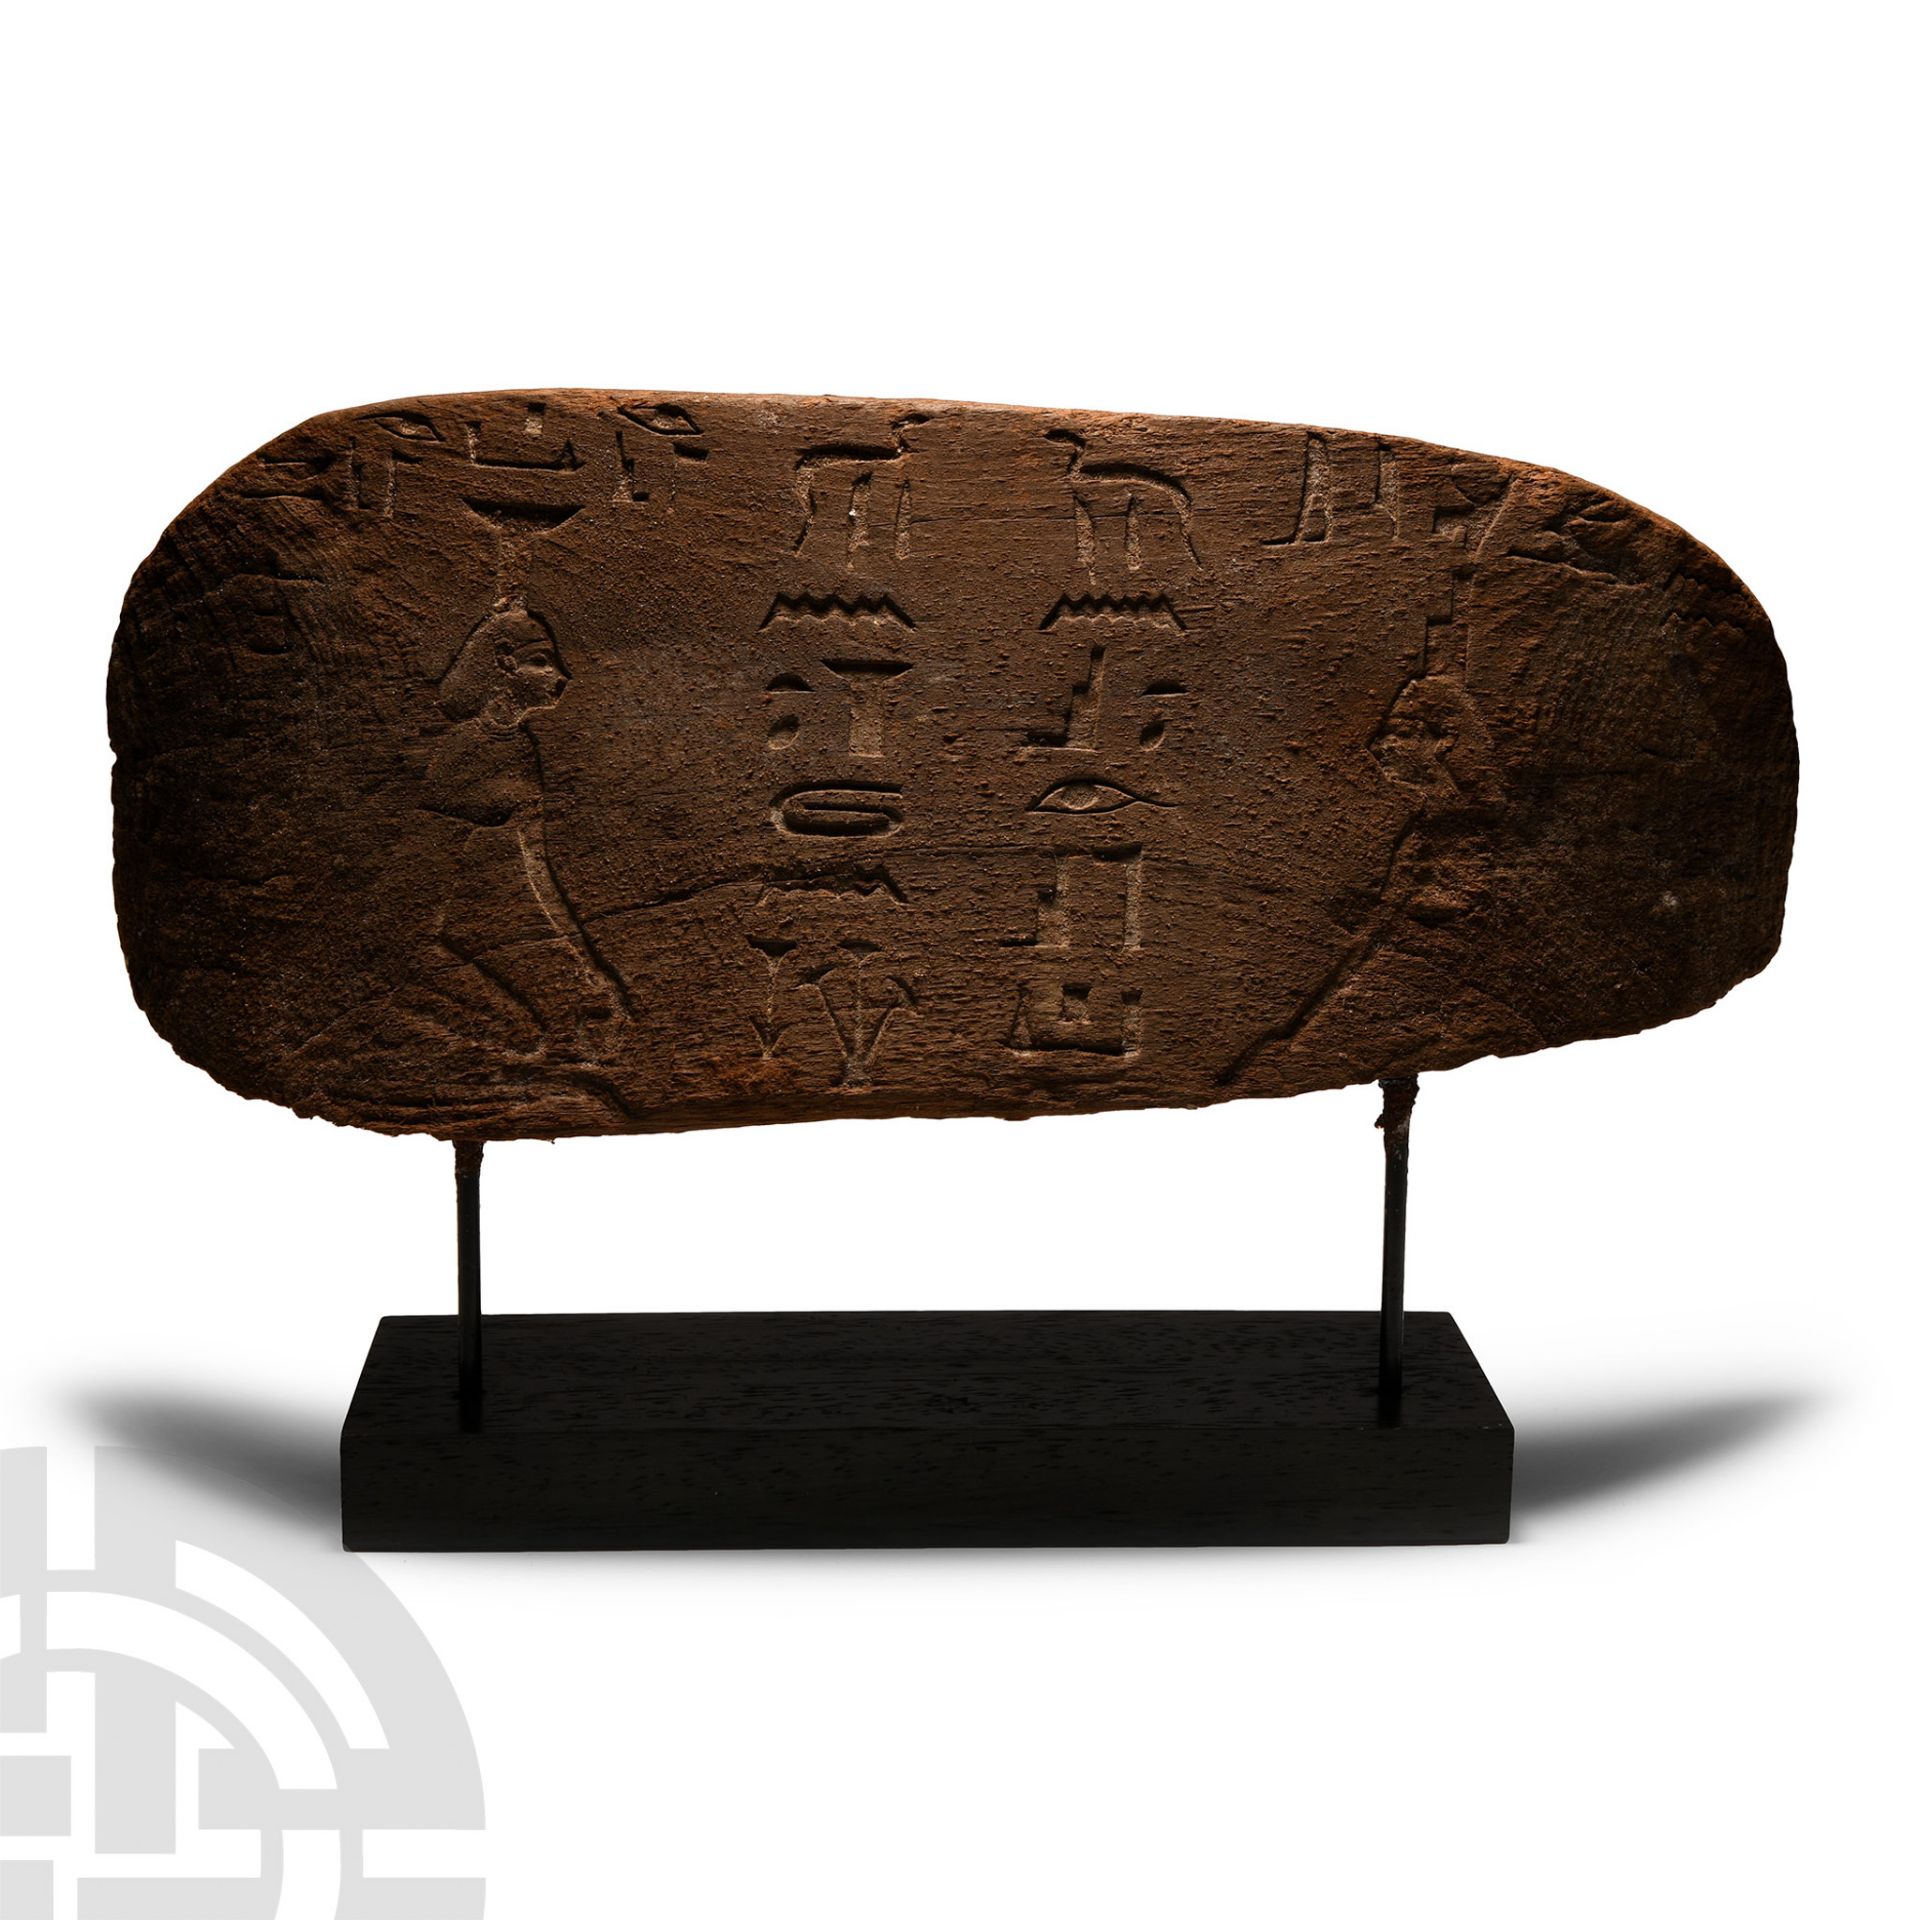 Egyptian Wood Panel with Hieroglyphs for Padi-Wsir